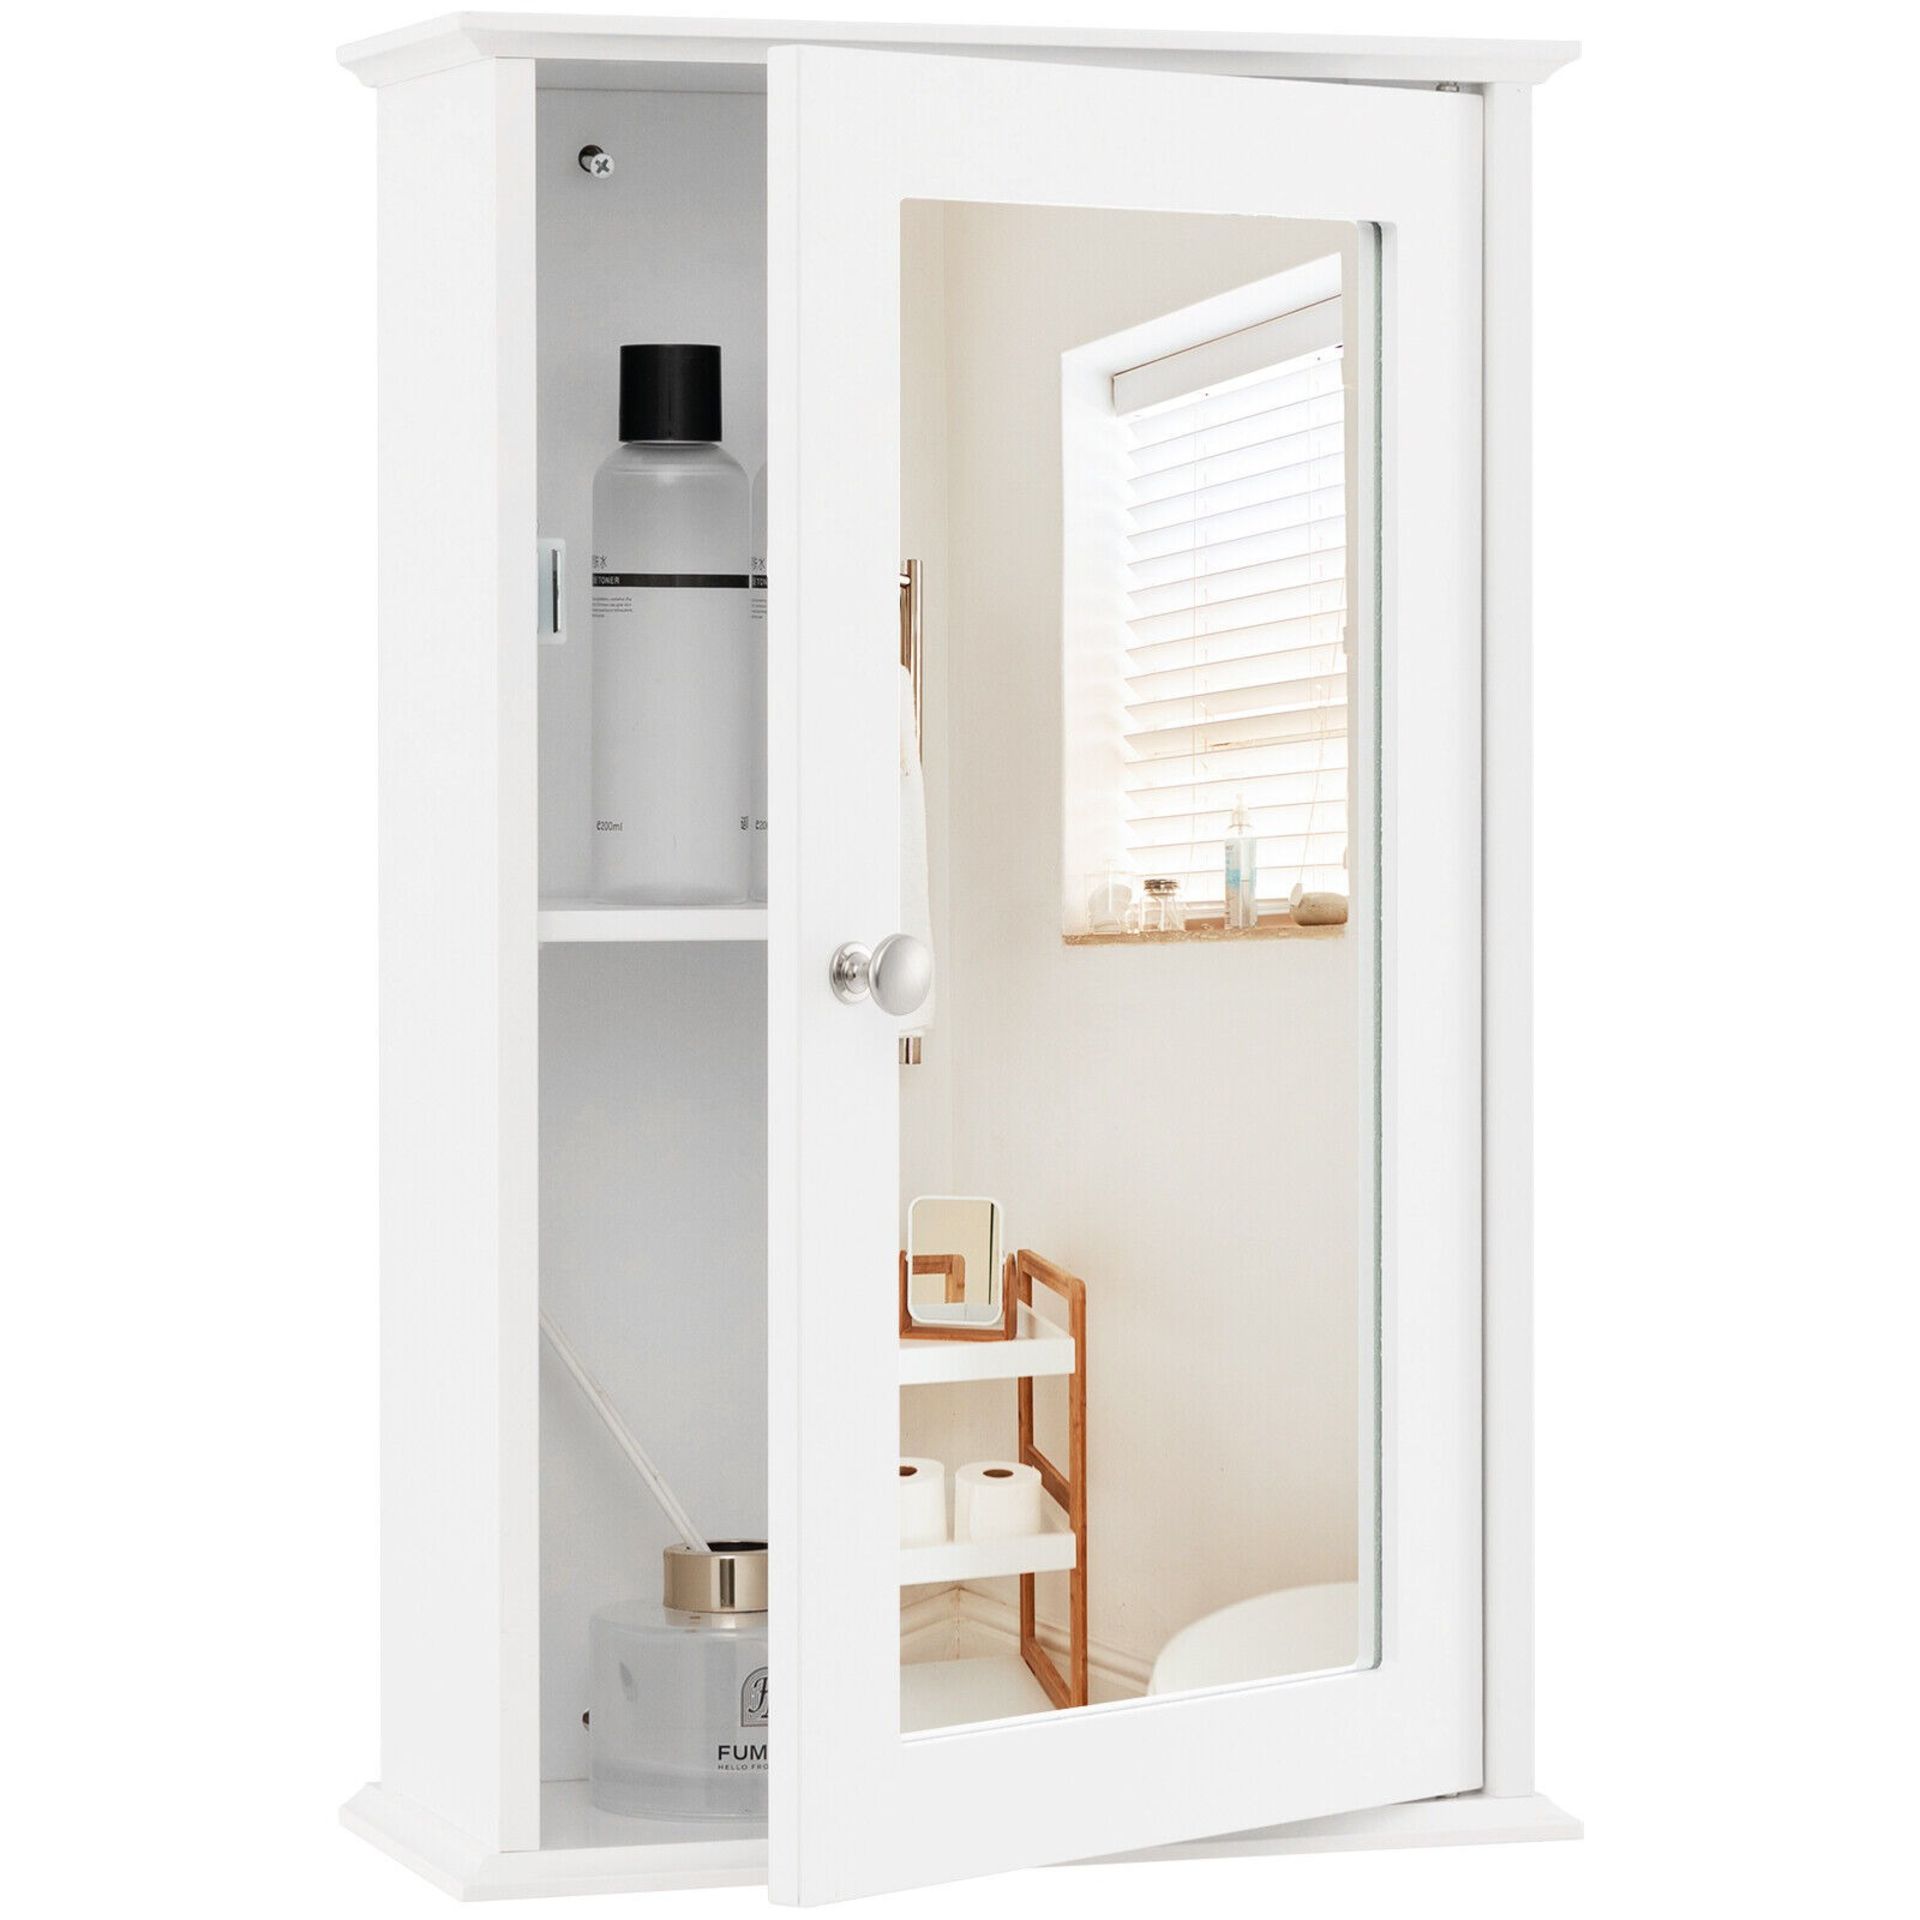 Bathroom Medicine Cabinet with Reversible Single Door Mirror Cabinet Organizer - ER53